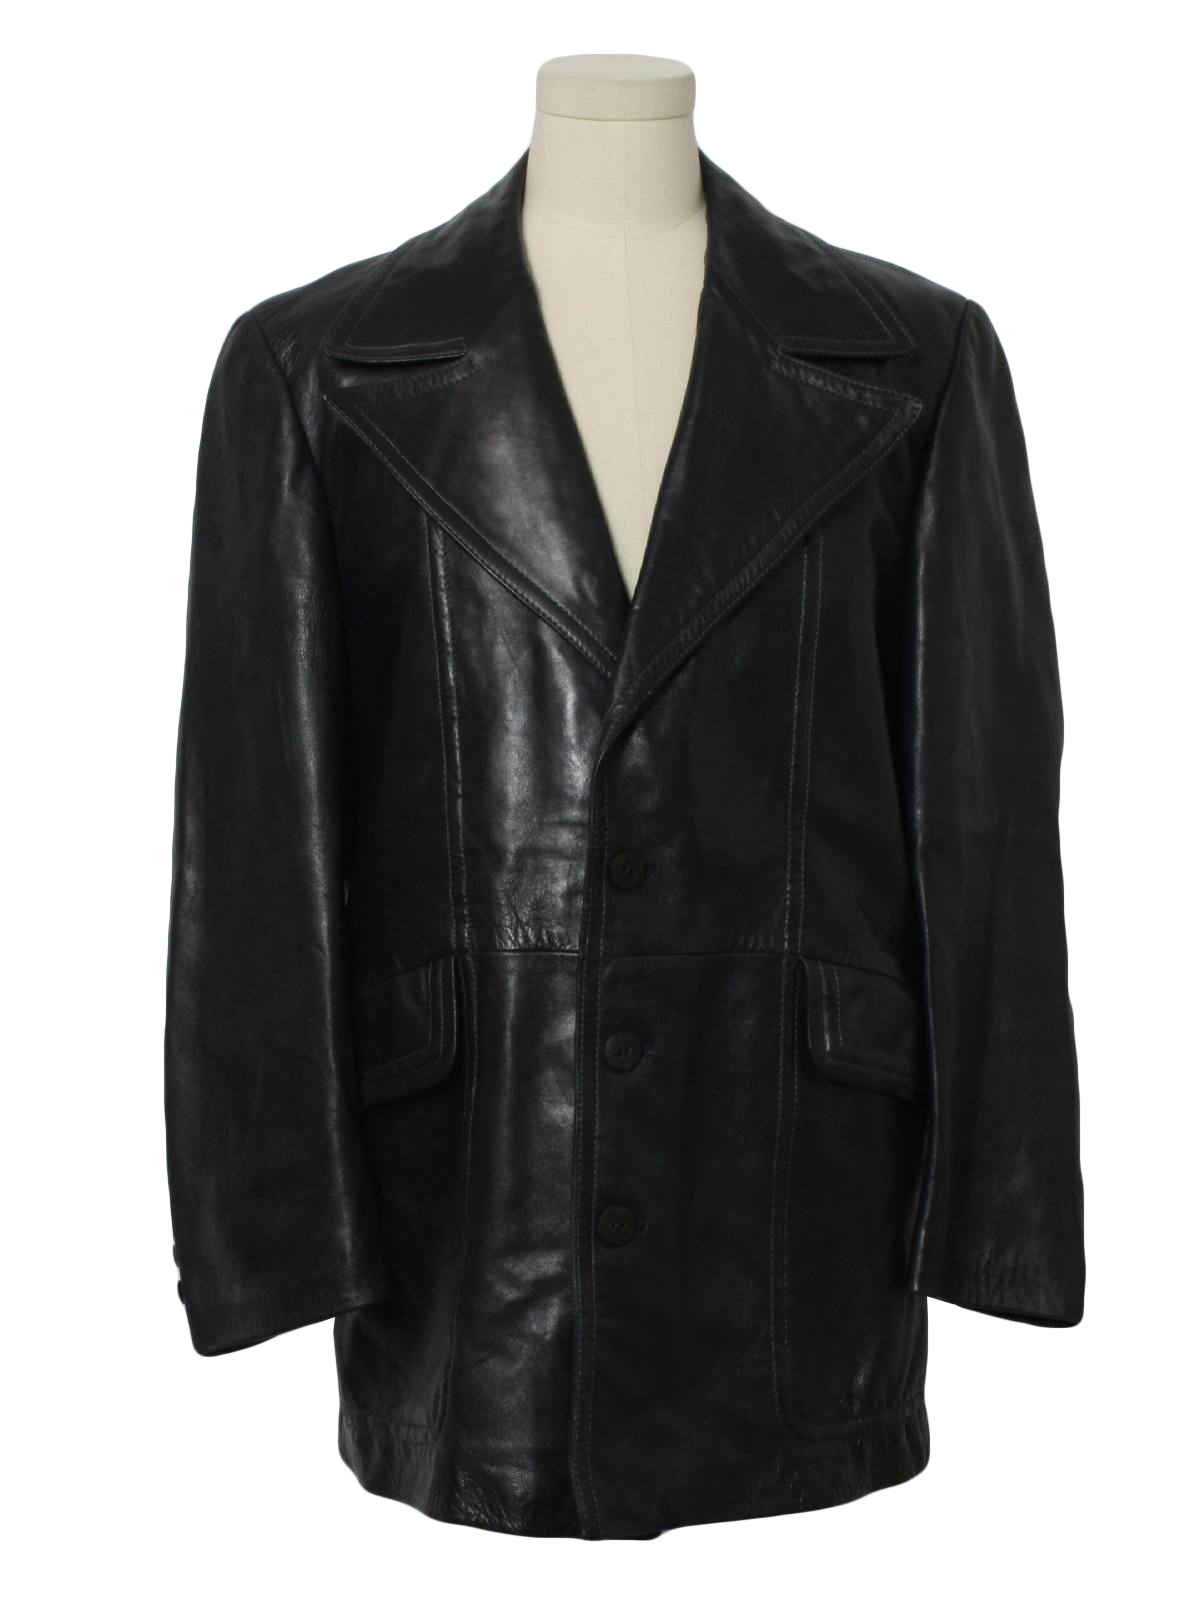 Retro 1970's Leather Jacket (Cortefiel) : 70s -Cortefiel- Mens dark ...